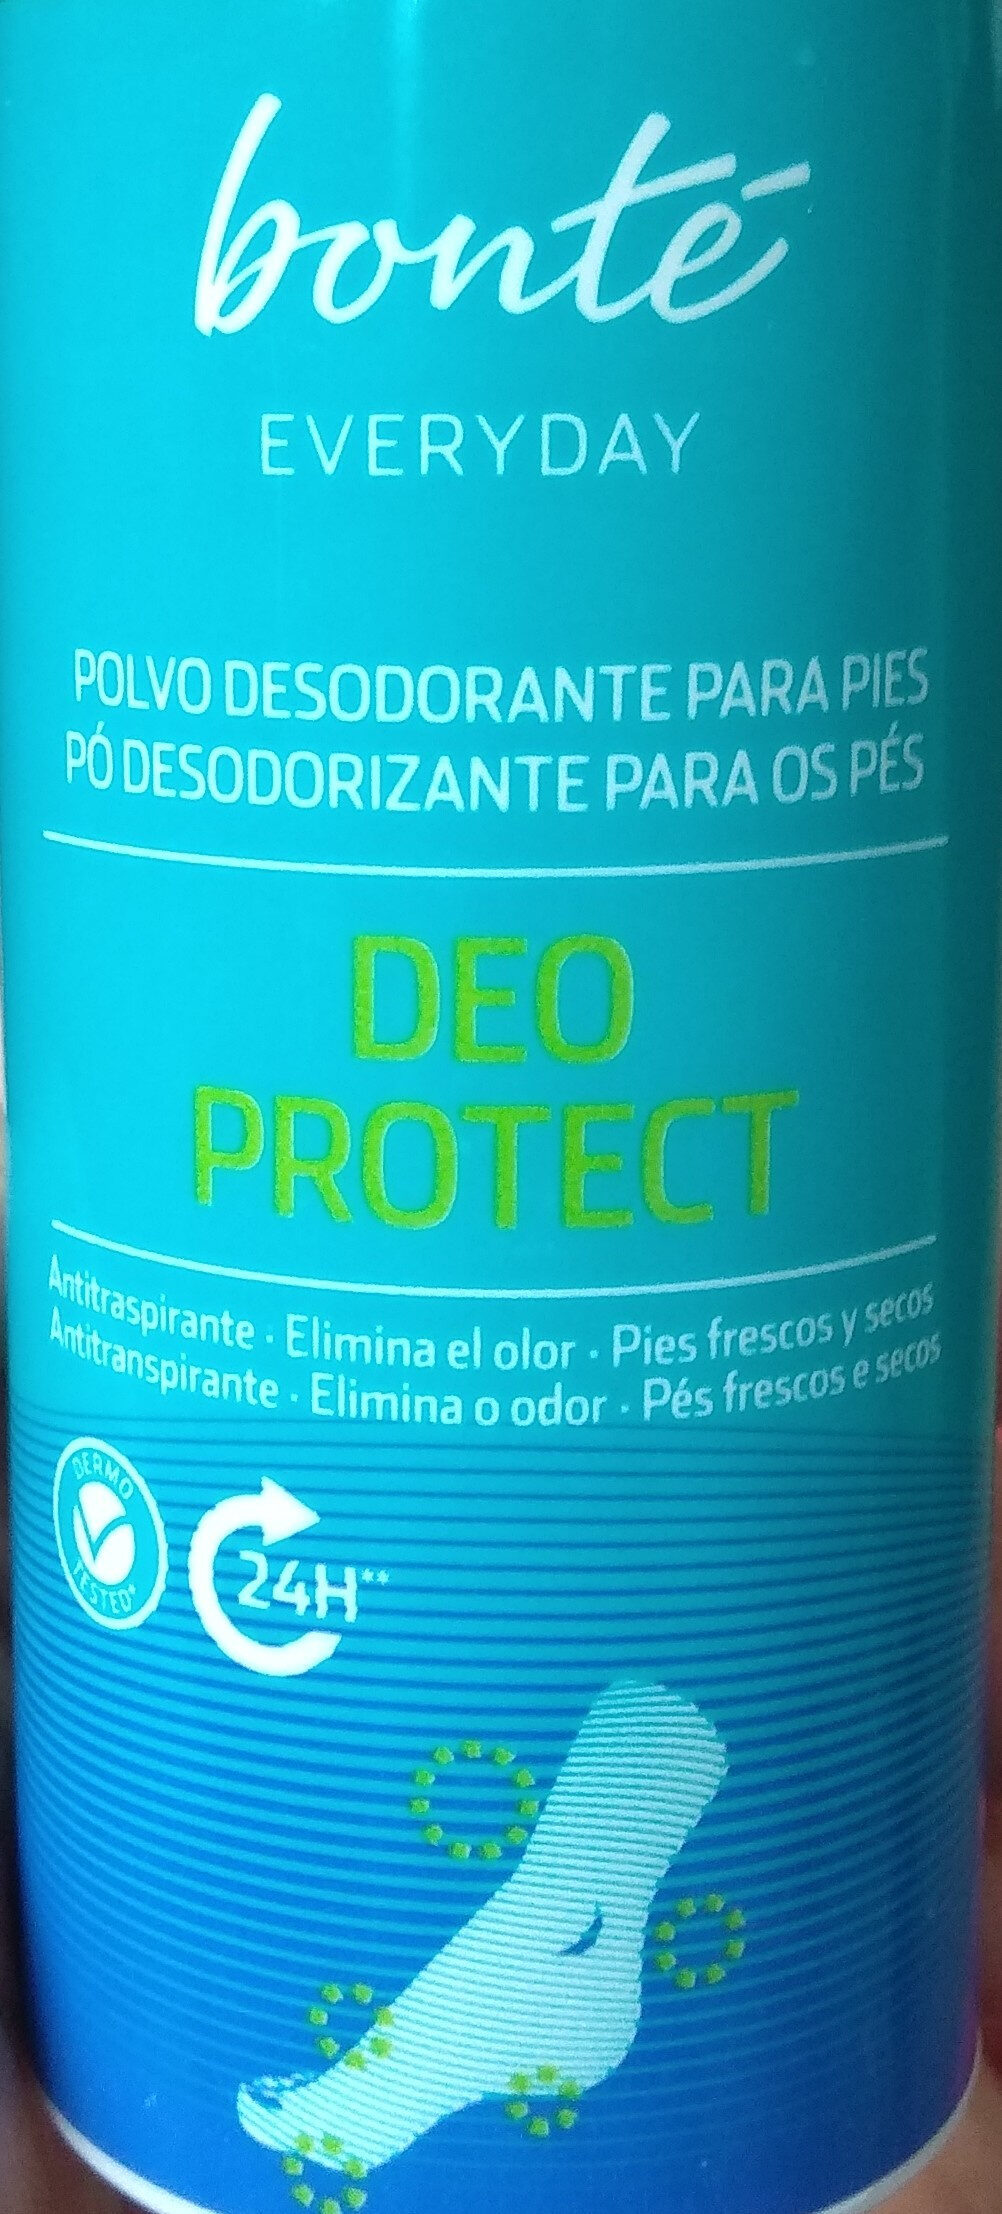 polvo desodorante para pies - Product - en